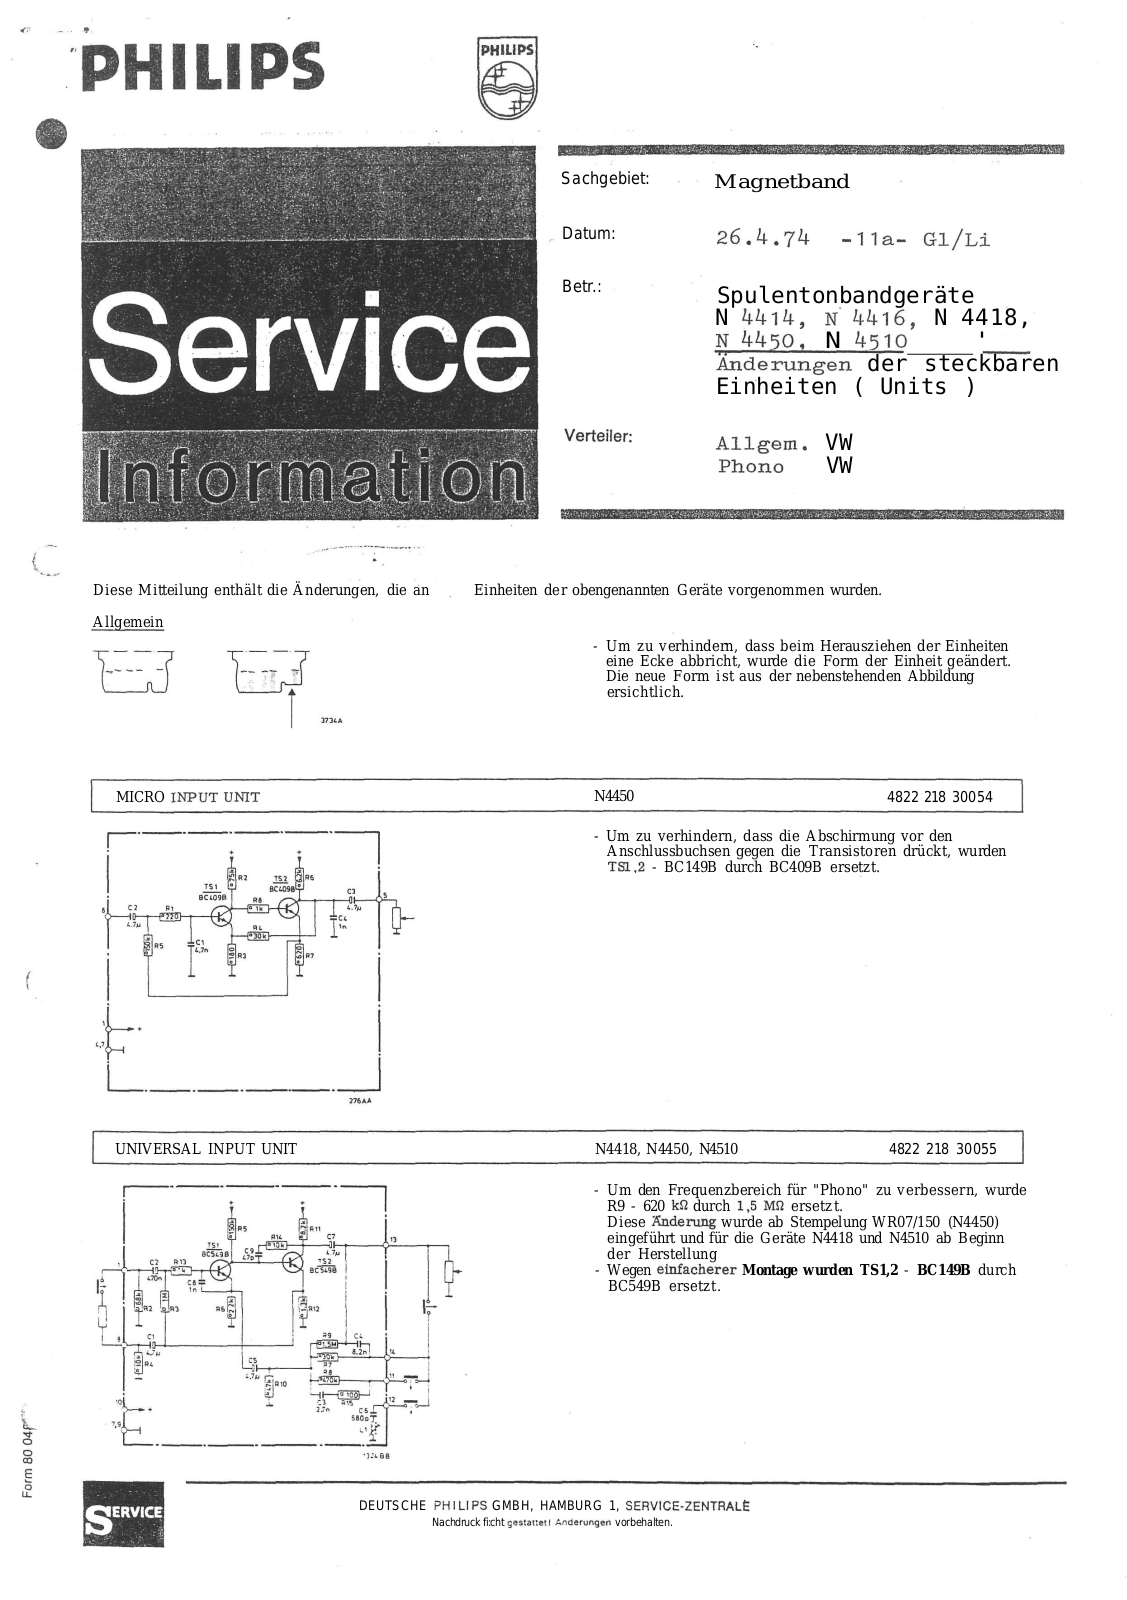 Philips N-4510, N-4450, N-4418, N-4414, N-4416 Service Manual